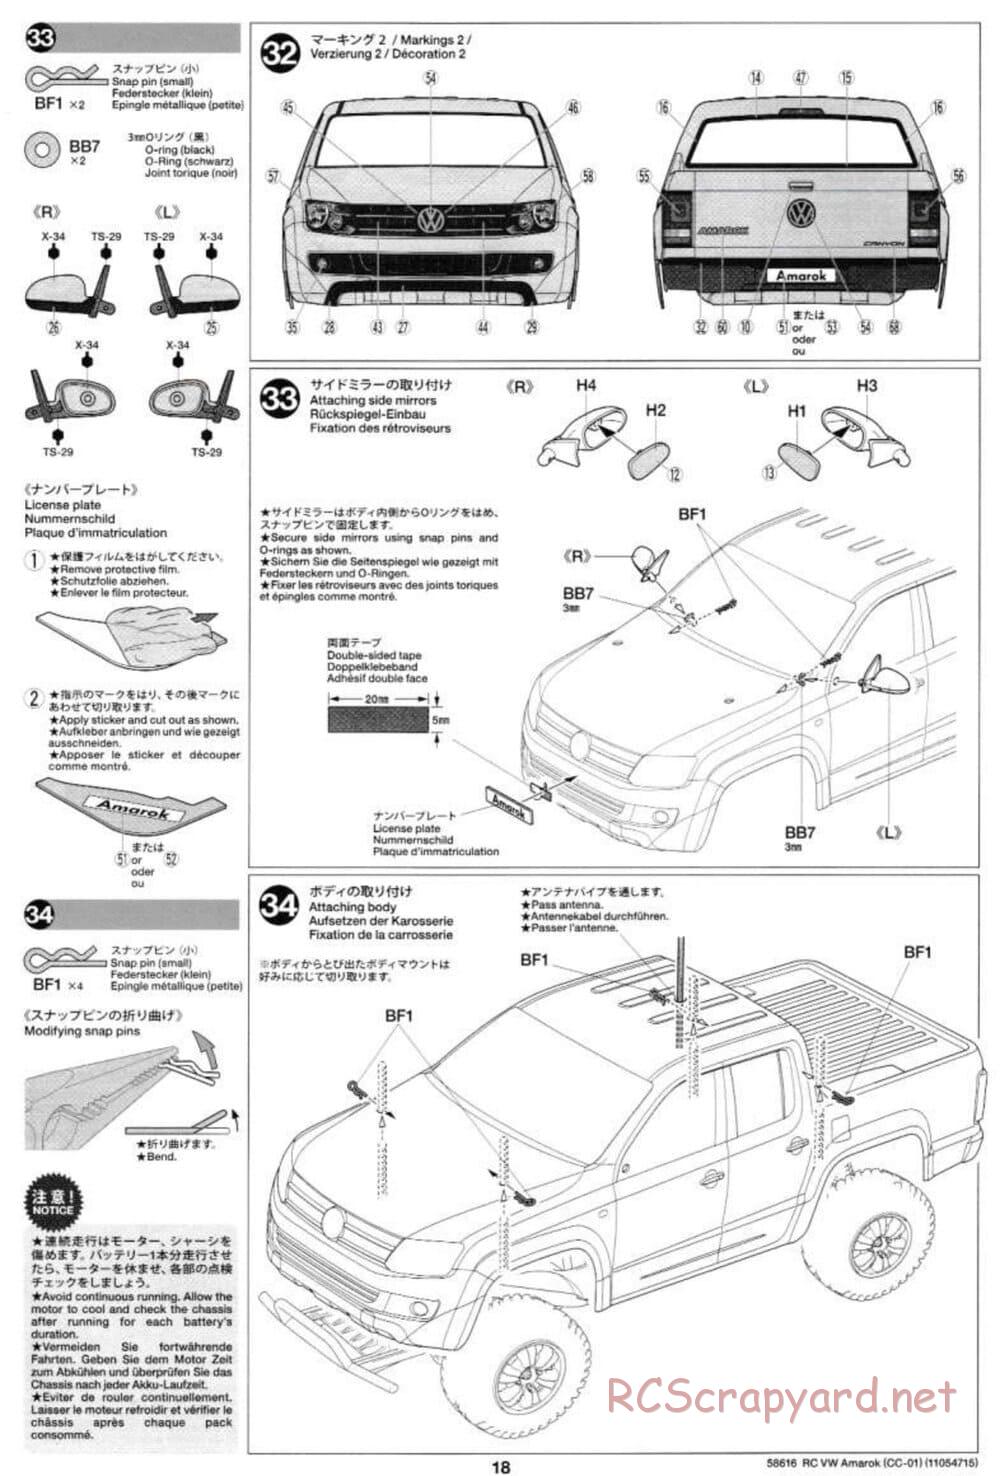 Tamiya - Volkswagen Amarok - CC-01 Chassis - Manual - Page 18